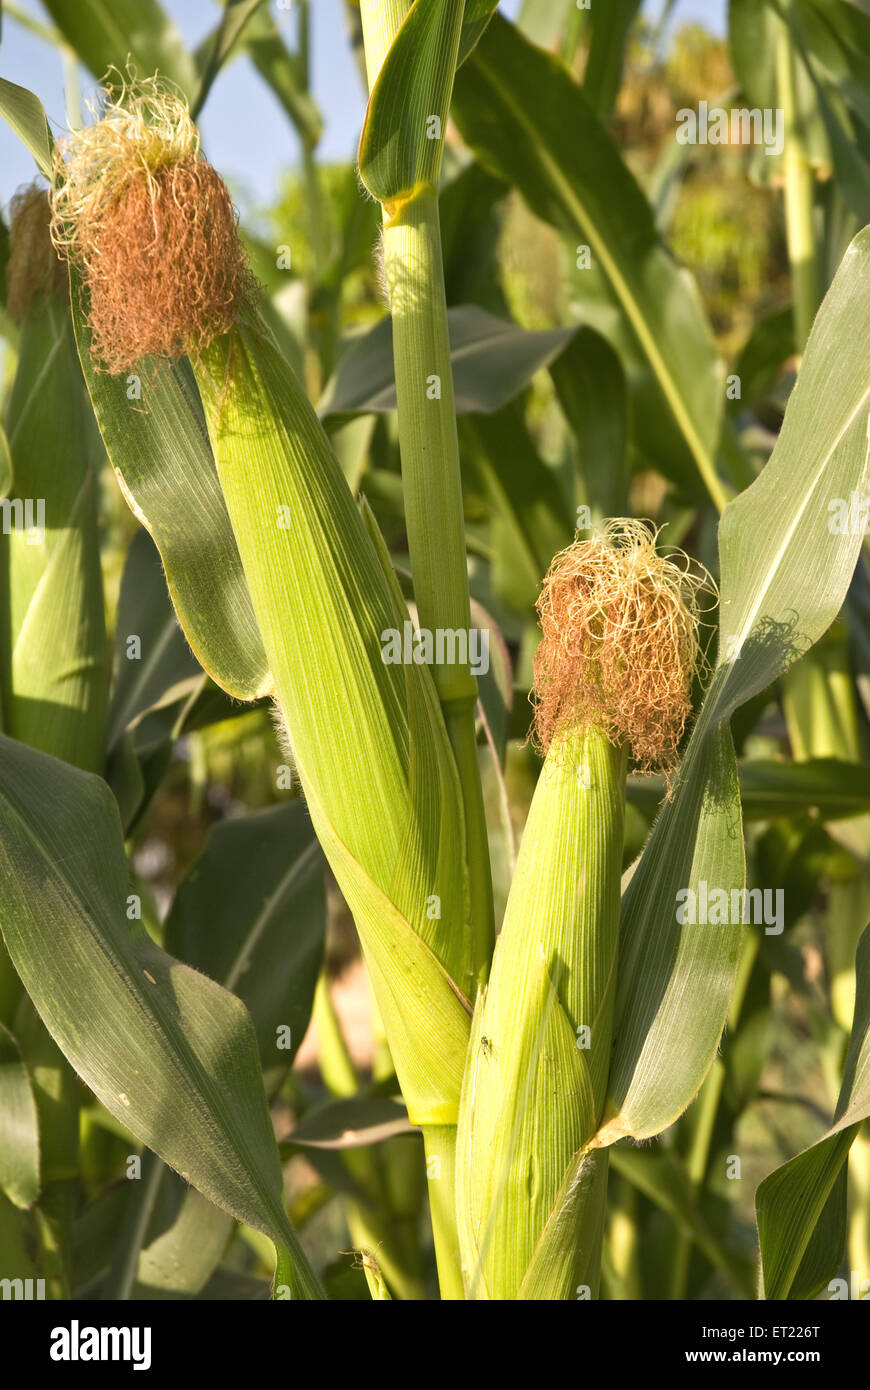 Grains de maïs zea mays amylacea var ; Padhegaon ; Ahmadnagar ; Maharashtra Inde Mars 2009 ; Banque D'Images